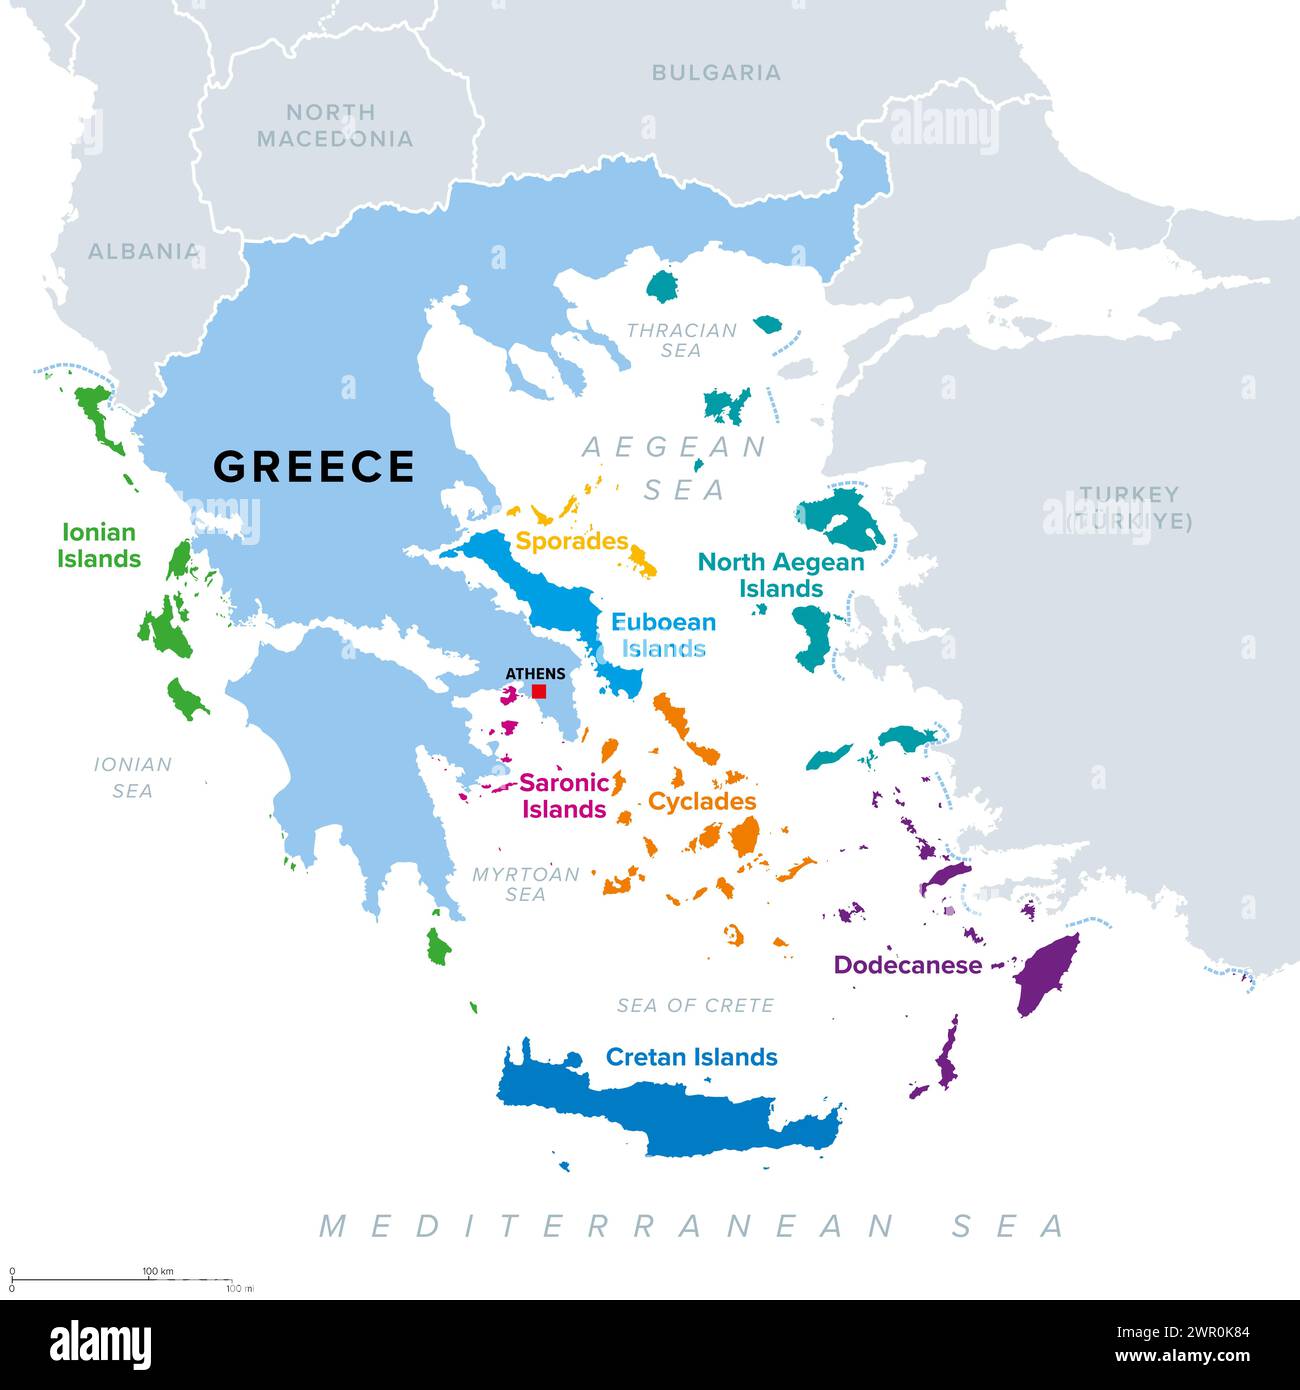 Gruppi di isole greche, isole della Grecia, mappa politica. Le isole greche sono tradizionalmente raggruppate in gruppi, la maggior parte delle quali si trovano nel Mar Egeo. Foto Stock